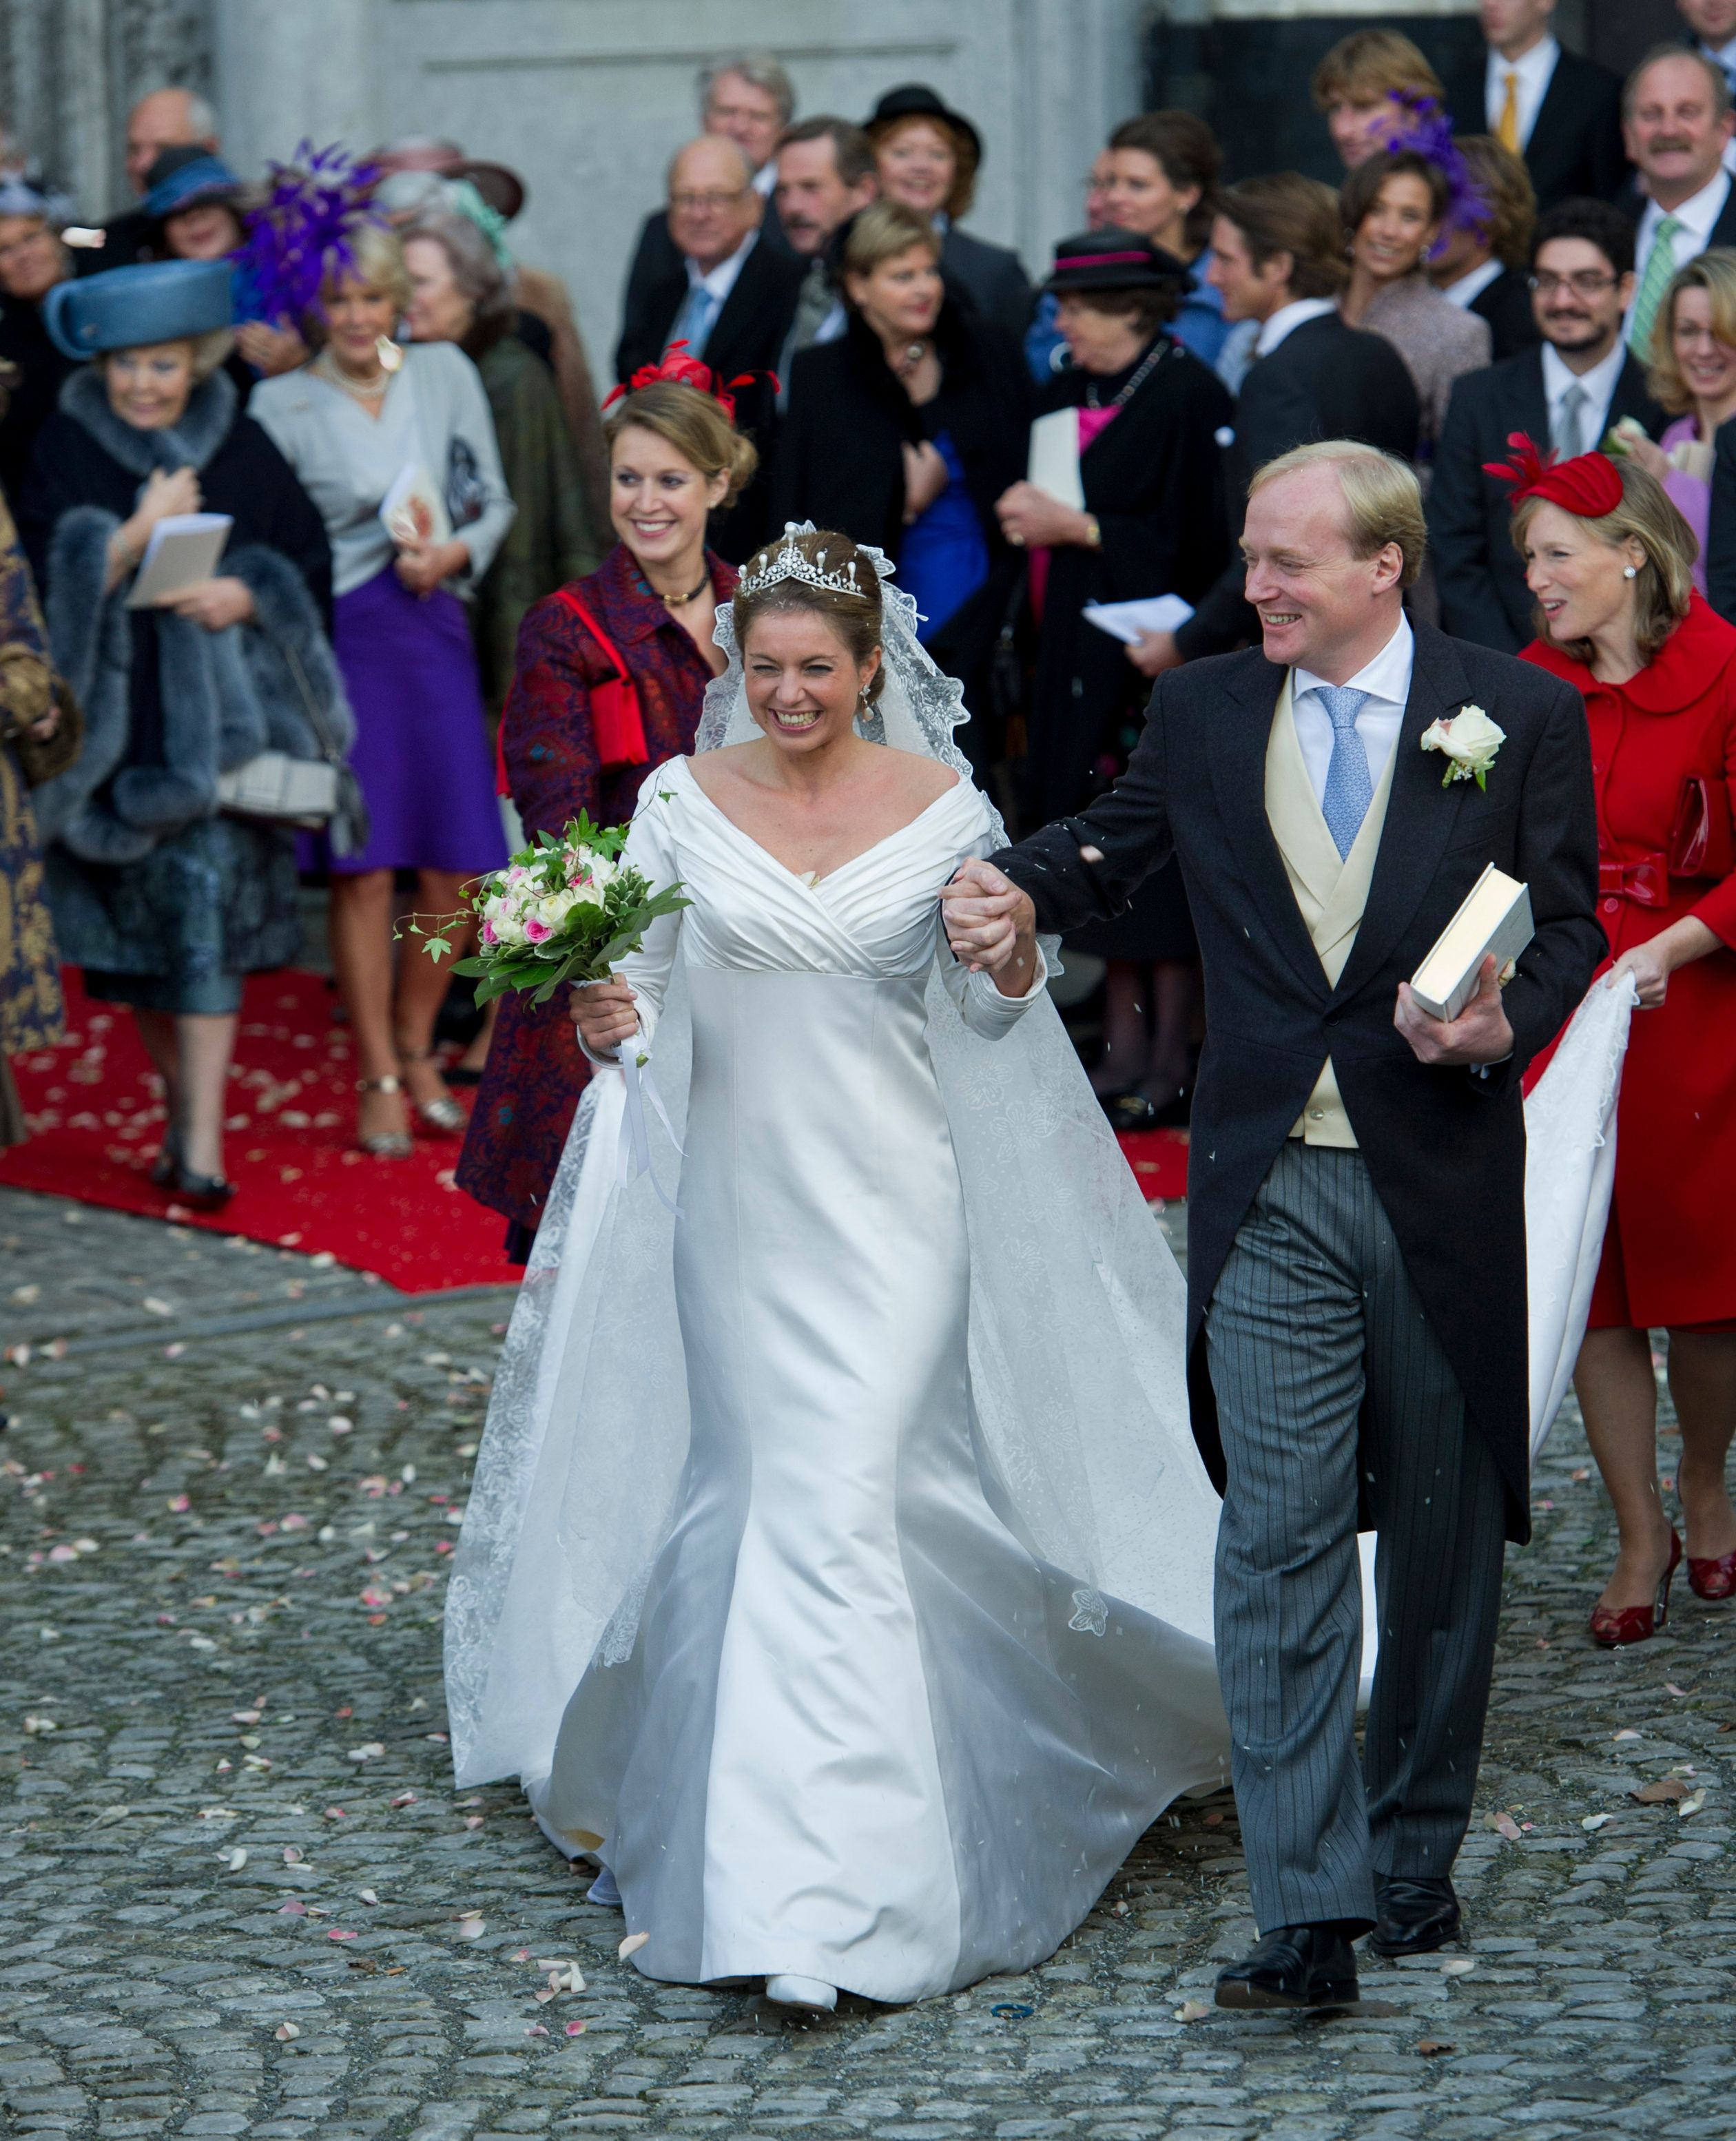 Het kerkelijk huwelijk van prins Carlos en Annemarie vindt plaats in Brussel op 22 november 2010.